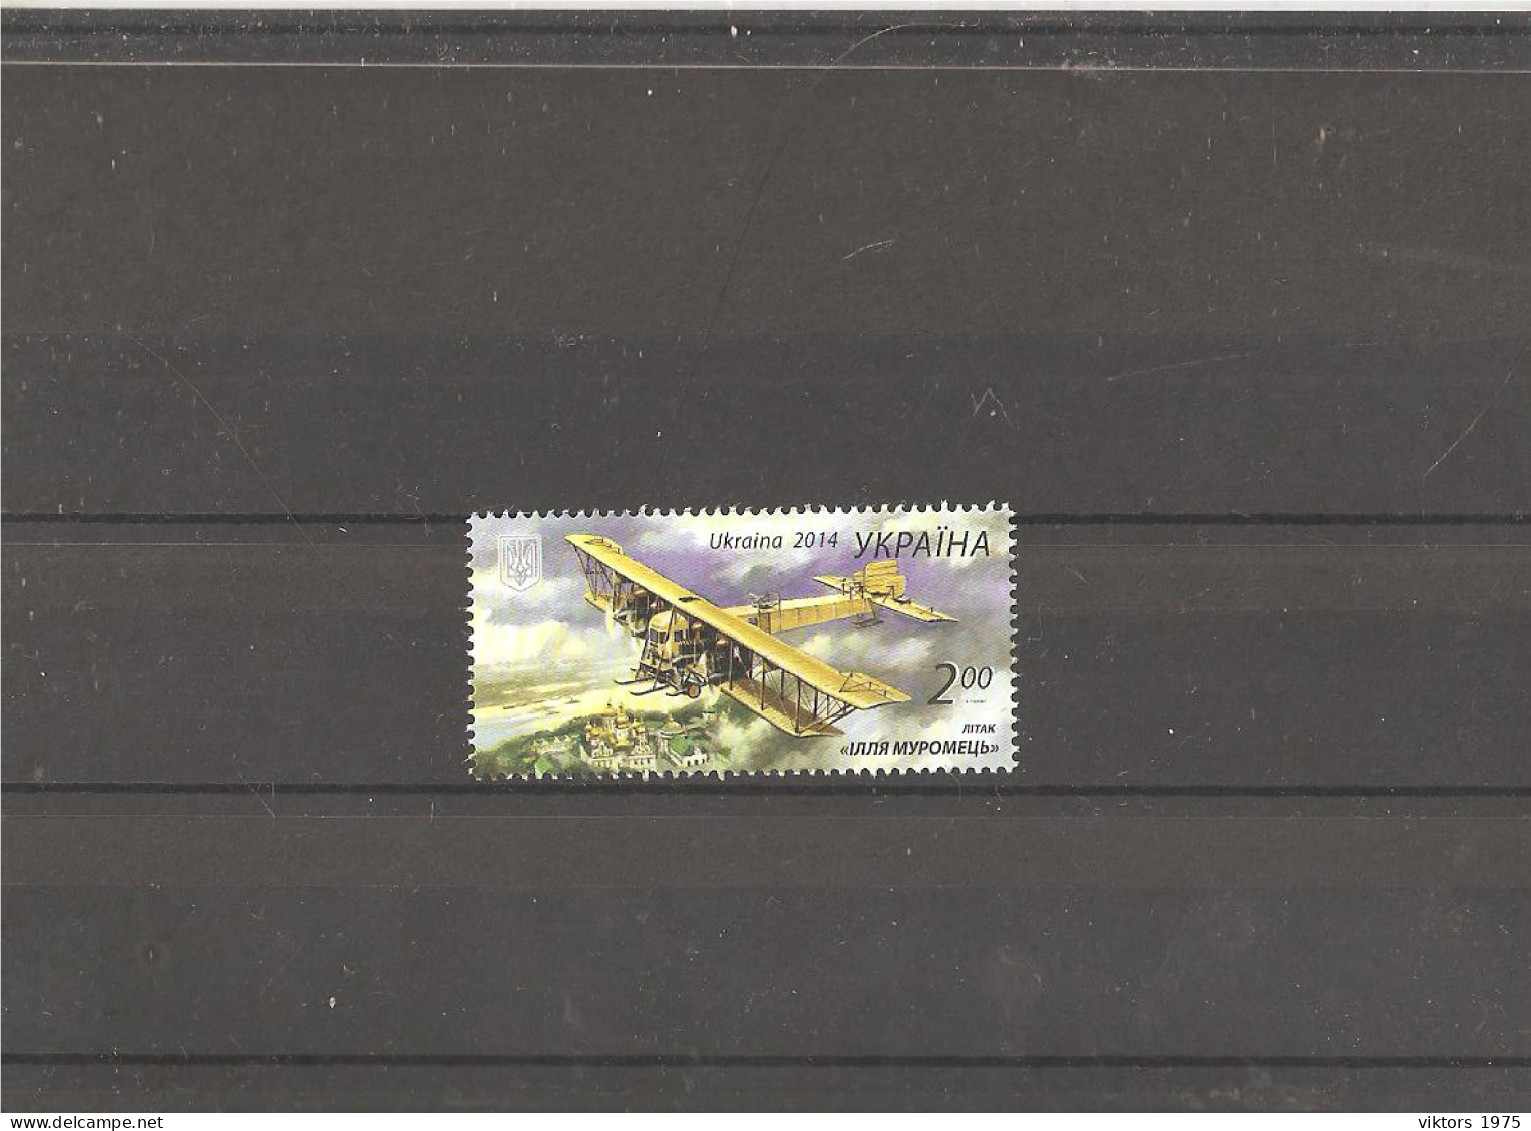 MNH Stamp Nr.1417 In MICHEL Catalog - Ukraine